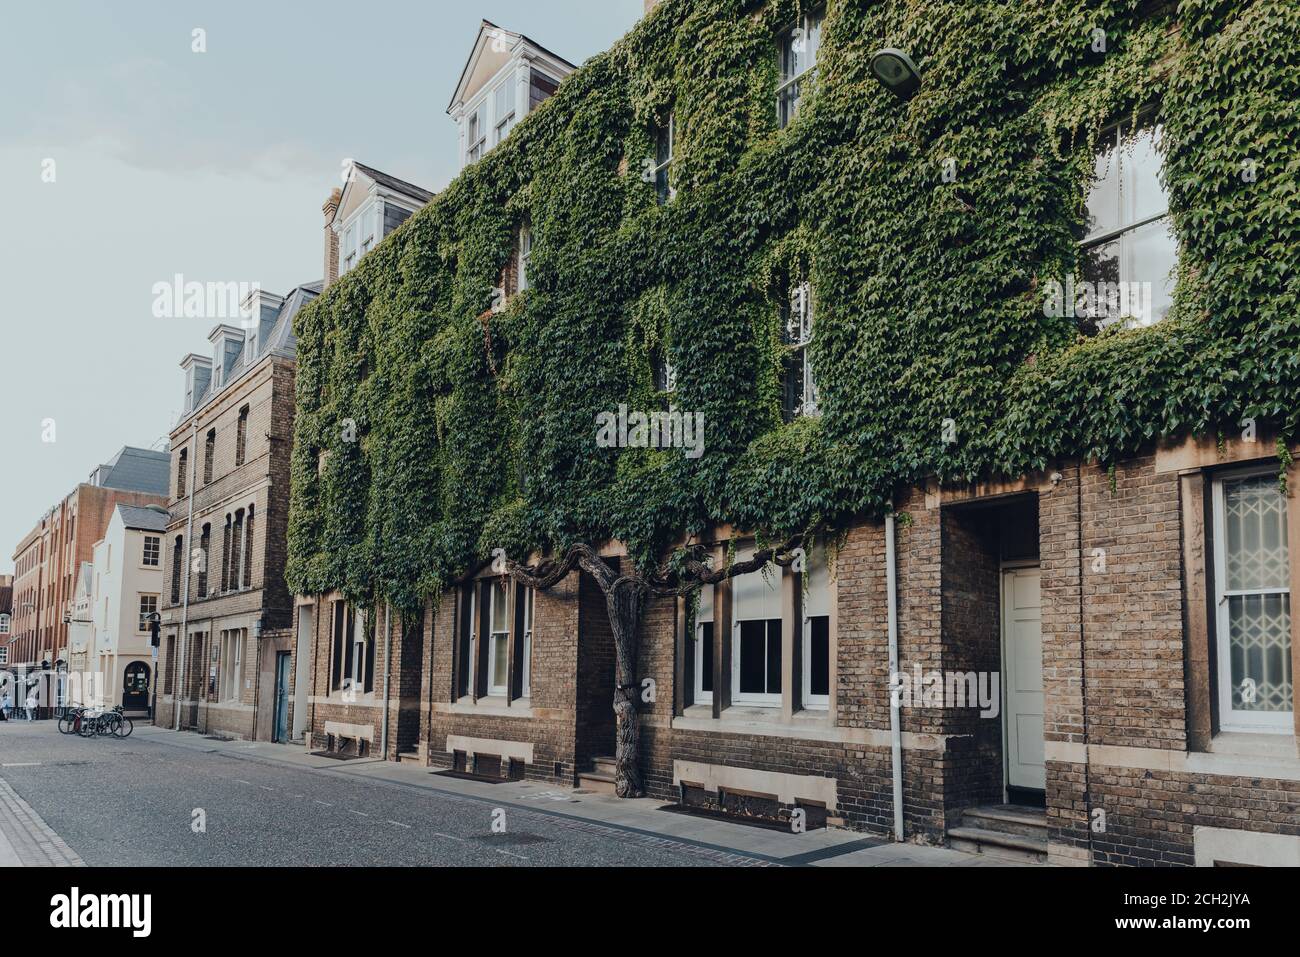 Oxford, Großbritannien - 04. August 2020: Seitenansicht eines Gebäudes an der New Inn Hall Street in Oxford, einer Stadt in England, die für ihre prestigeträchtige Universität berühmt ist Stockfoto